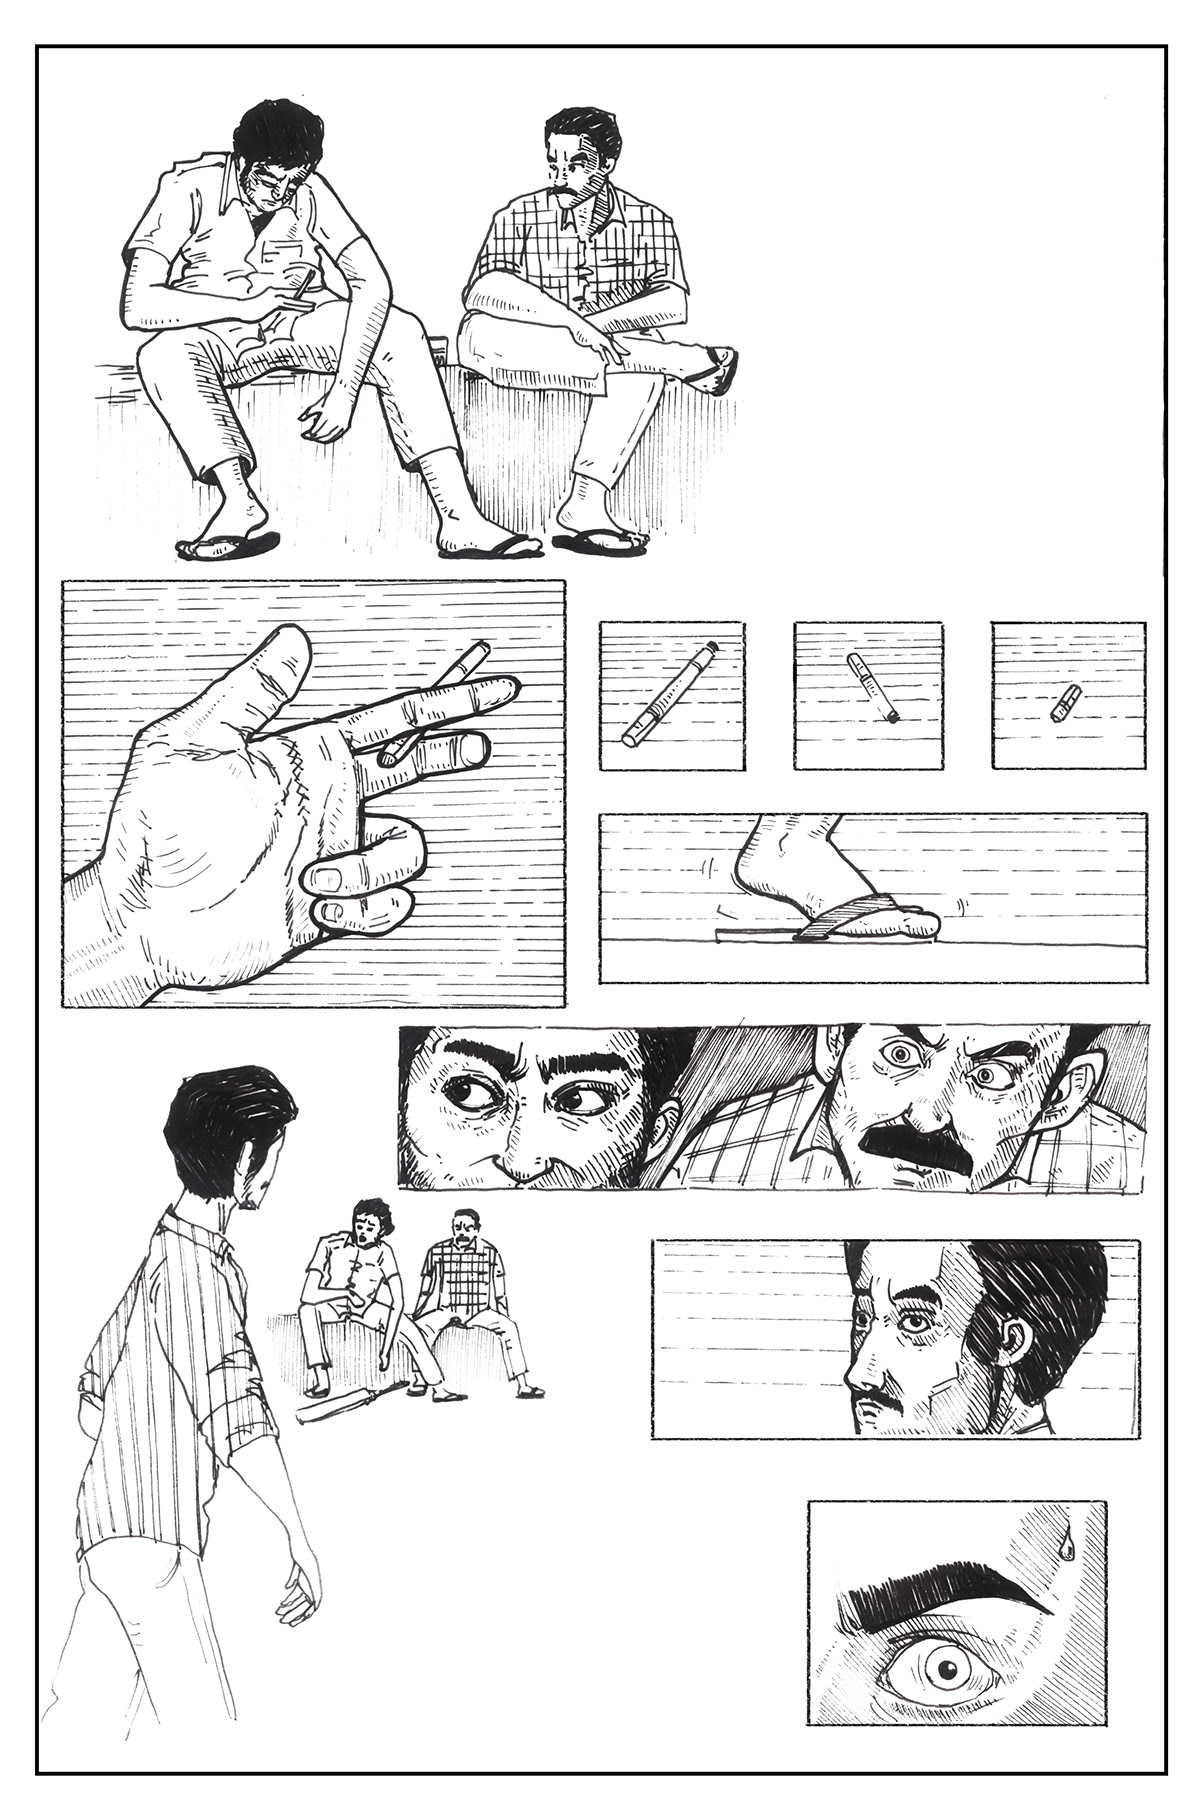 Graphic Novel ILLUSTRATION  art India MUMBAI bombay